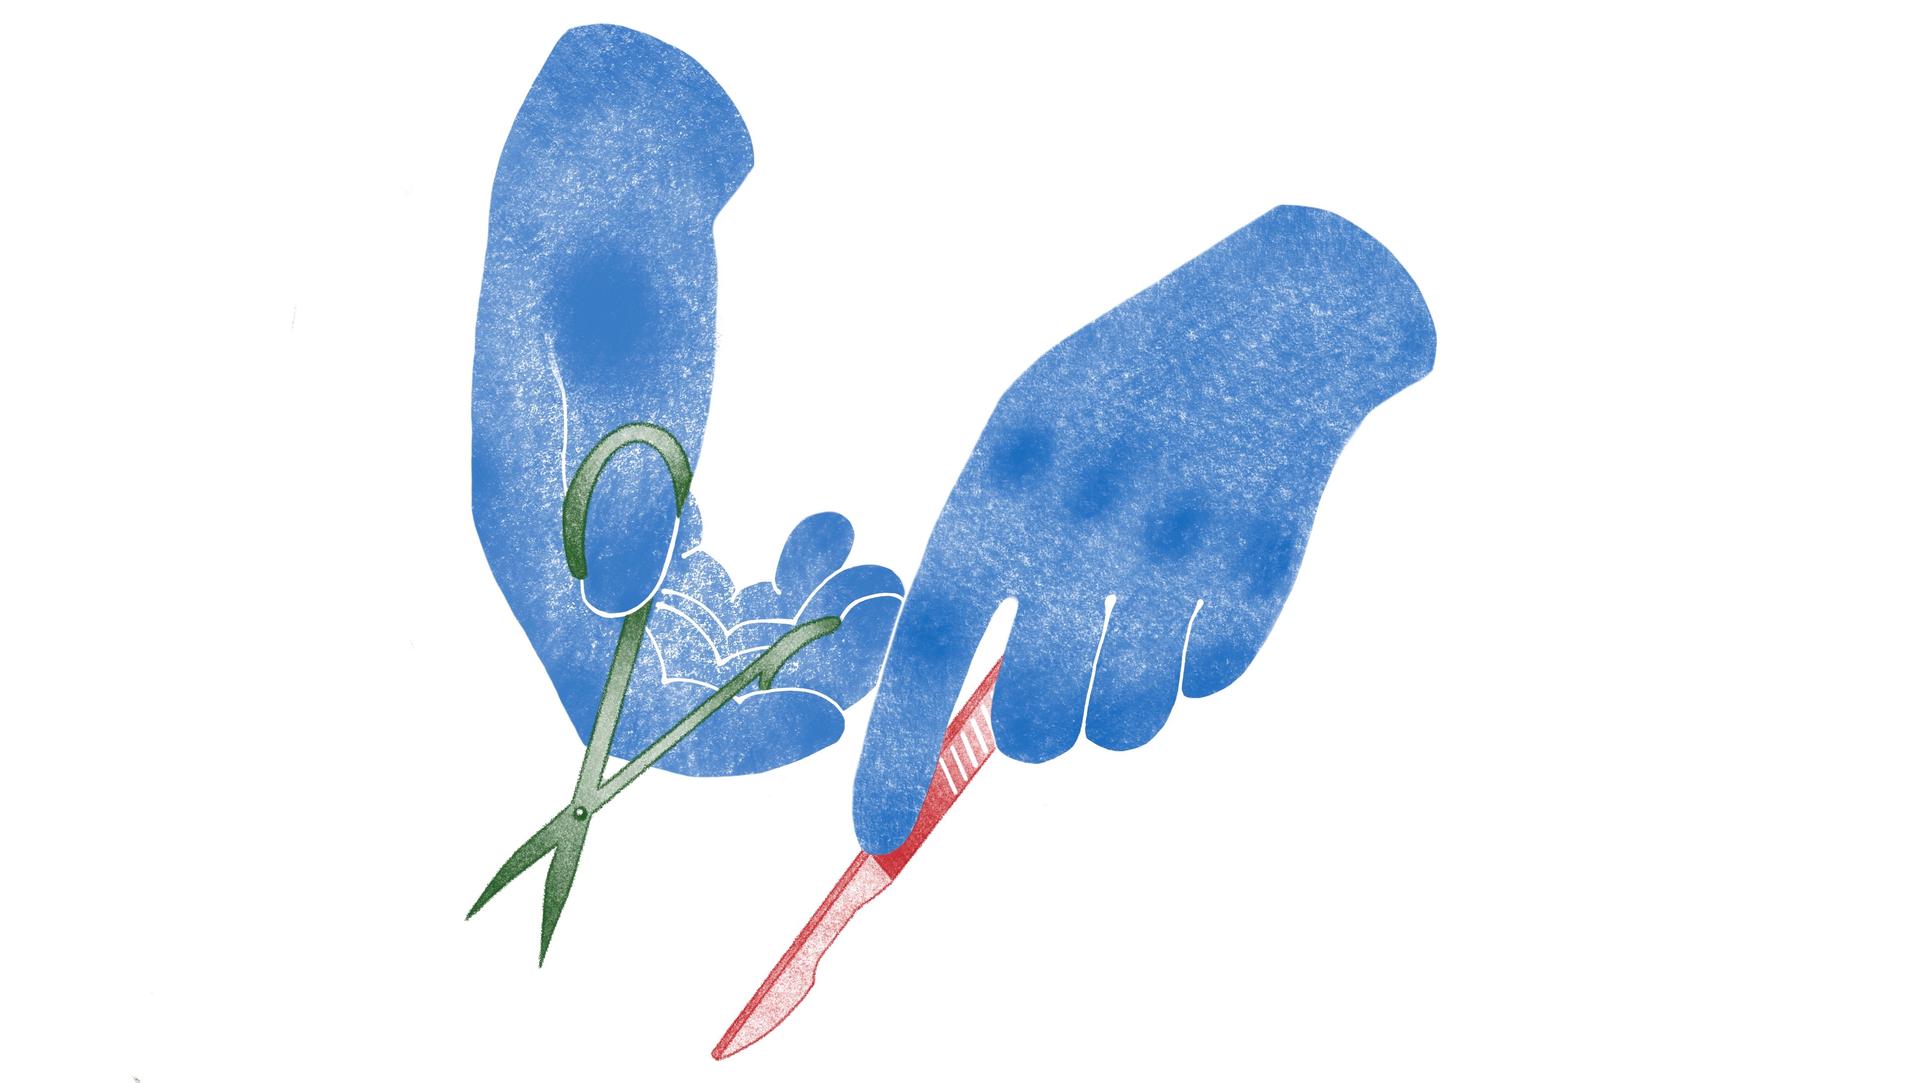 Das Bild zeigt 2 Hände mit Schere und Skalpell.